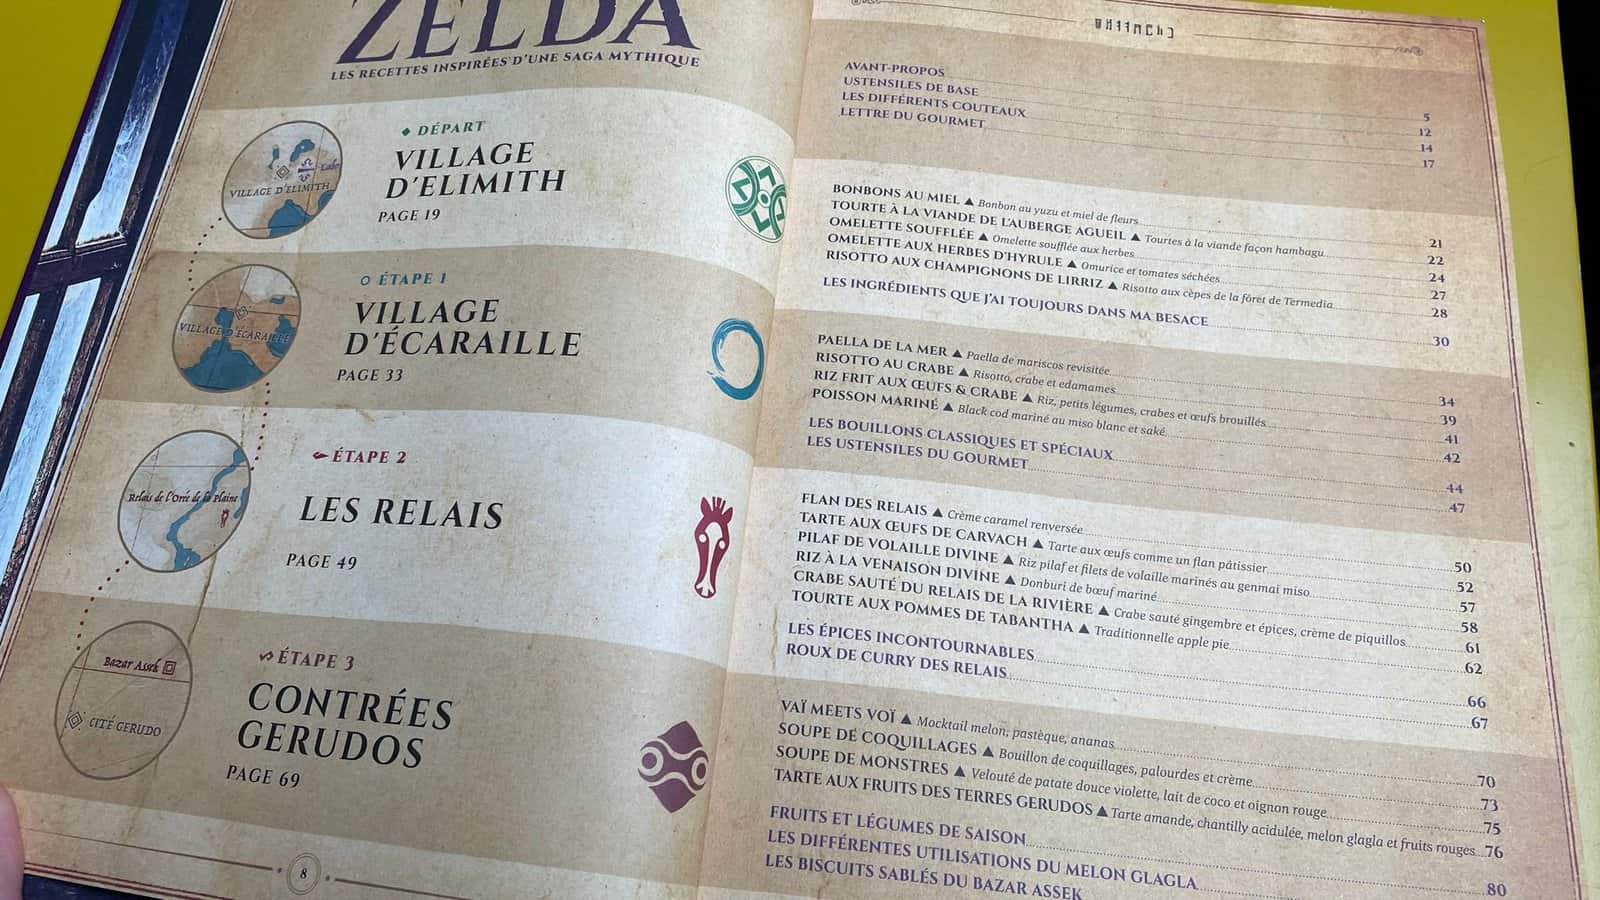 la cuisine dans Zelda : les recettes inspirées d'une saga mythique